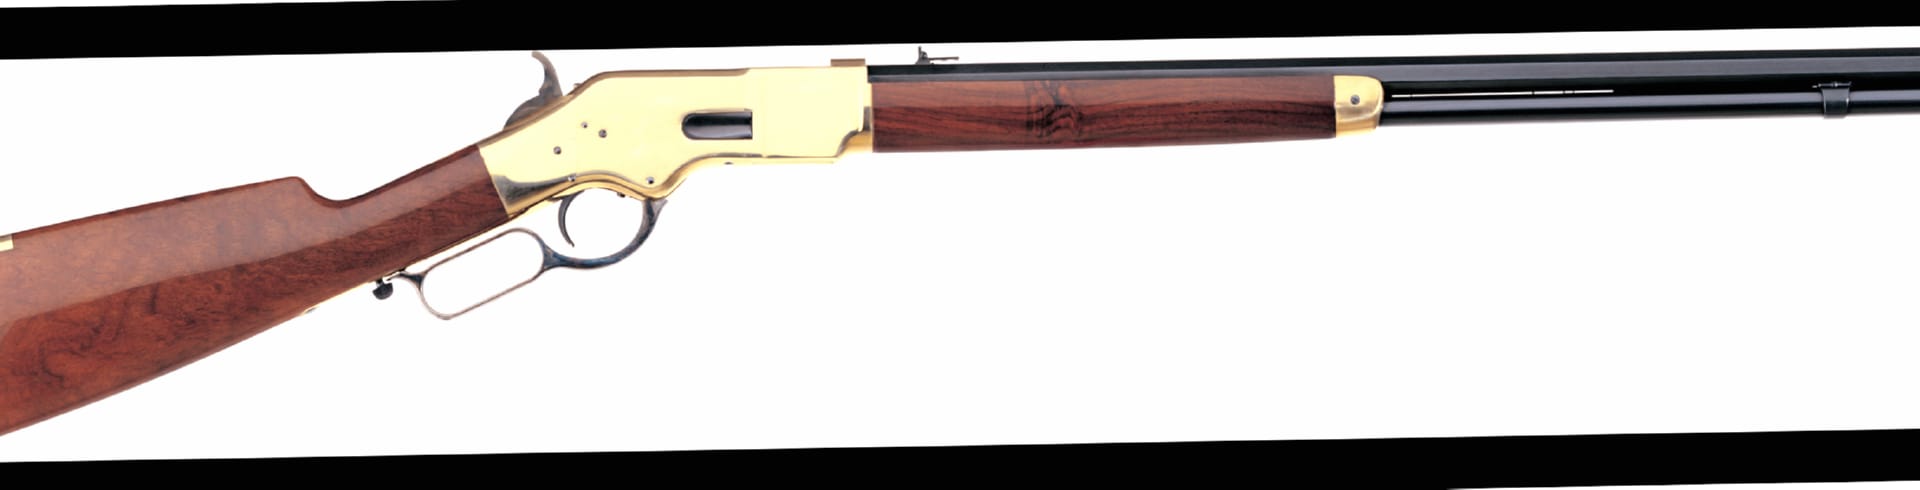 Uberti 1866 Yellowboy Rifle at 1024 x 768 size wallpapers HD quality